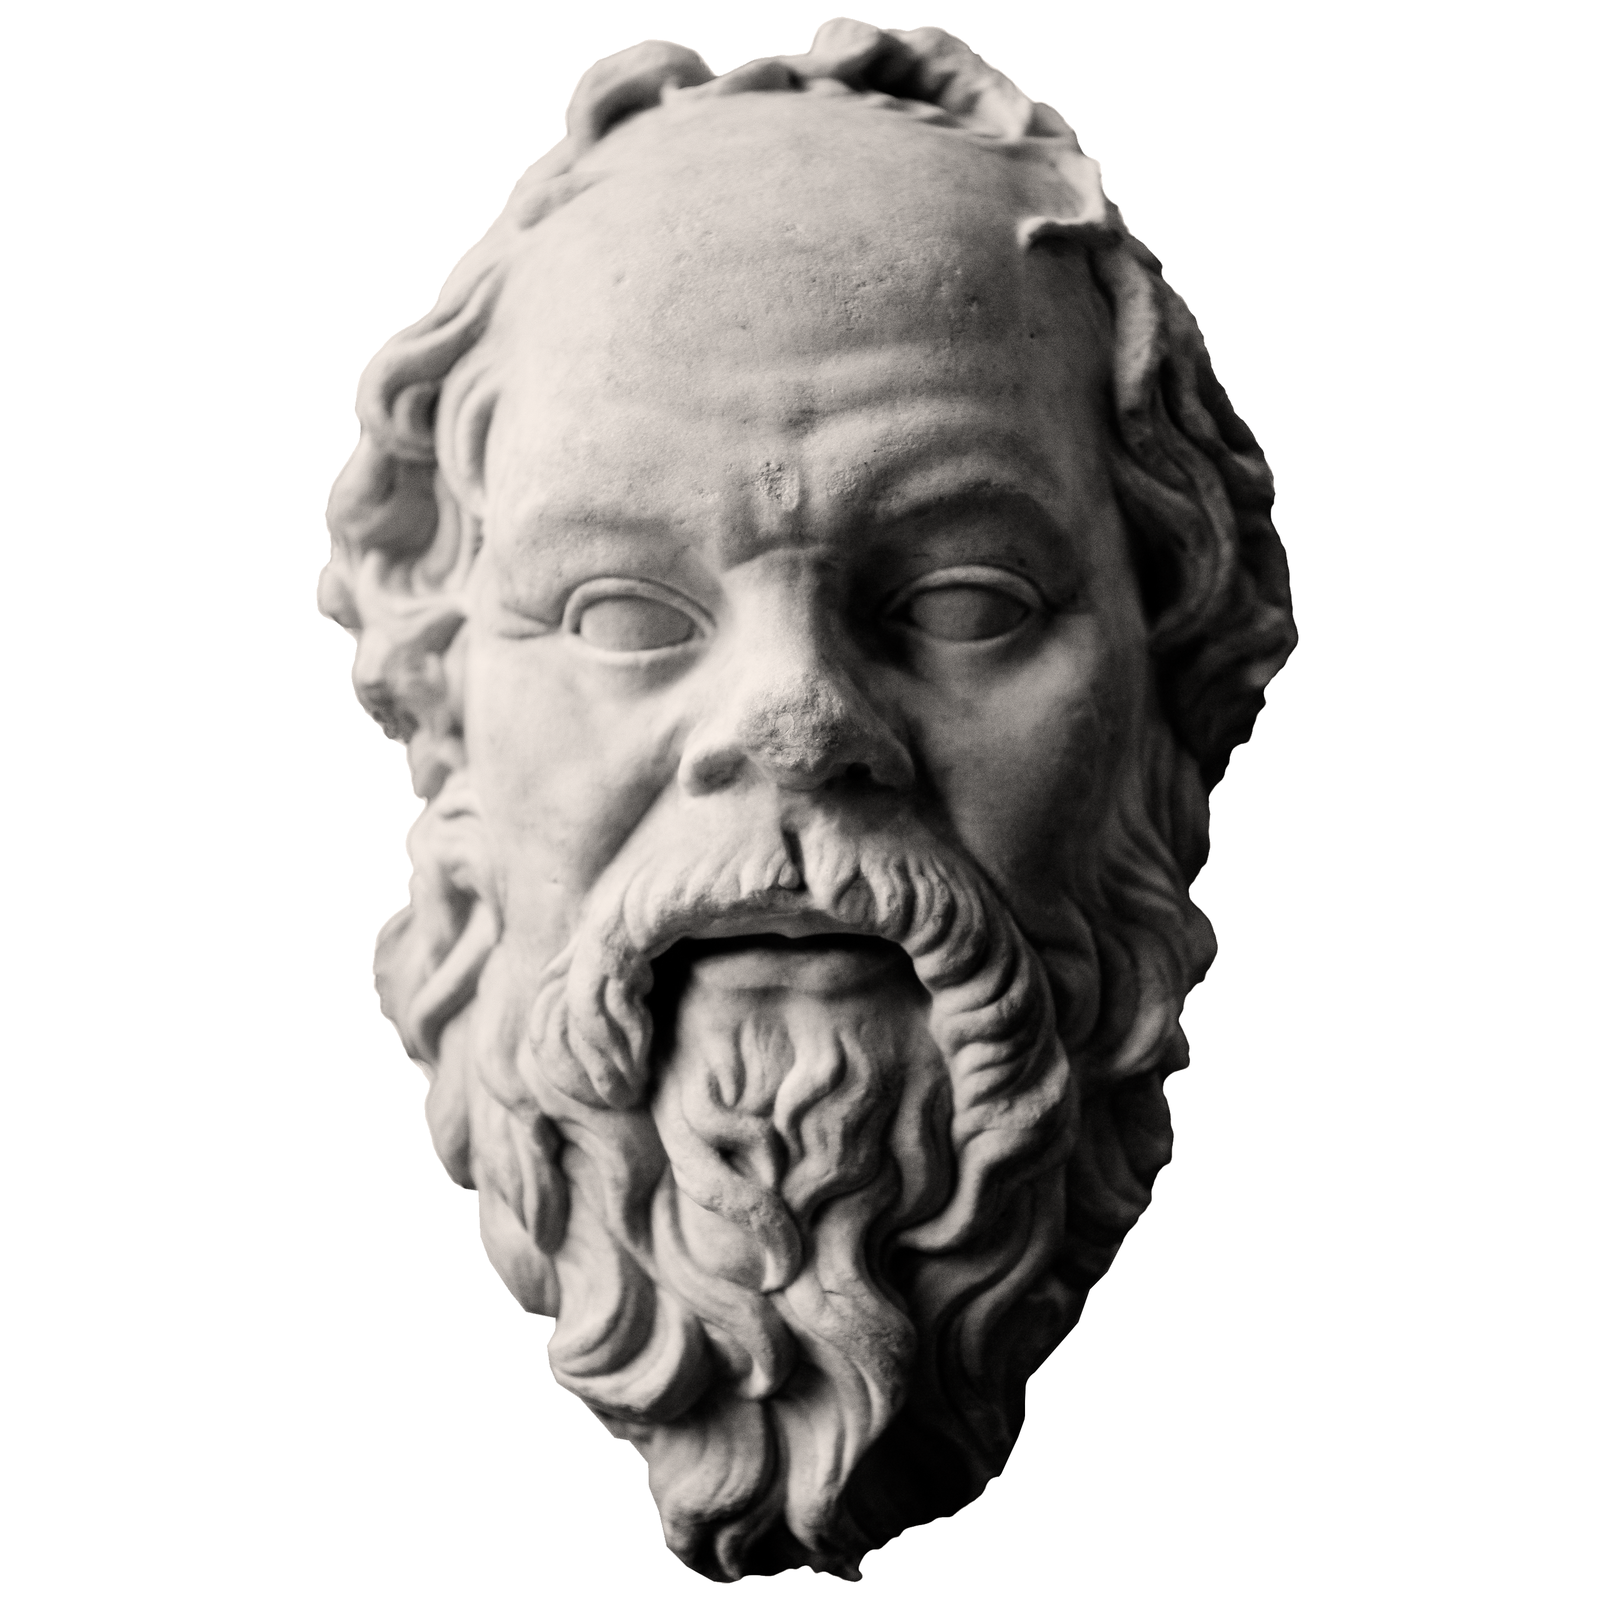 Sokrates – podobizna przechowywana w Luwrze w Paryżu Sokrates – podobizna przechowywana w Luwrze w Paryżu Źródło: Derek Key, Wikimedia Commons, licencja: CC BY 2.0.